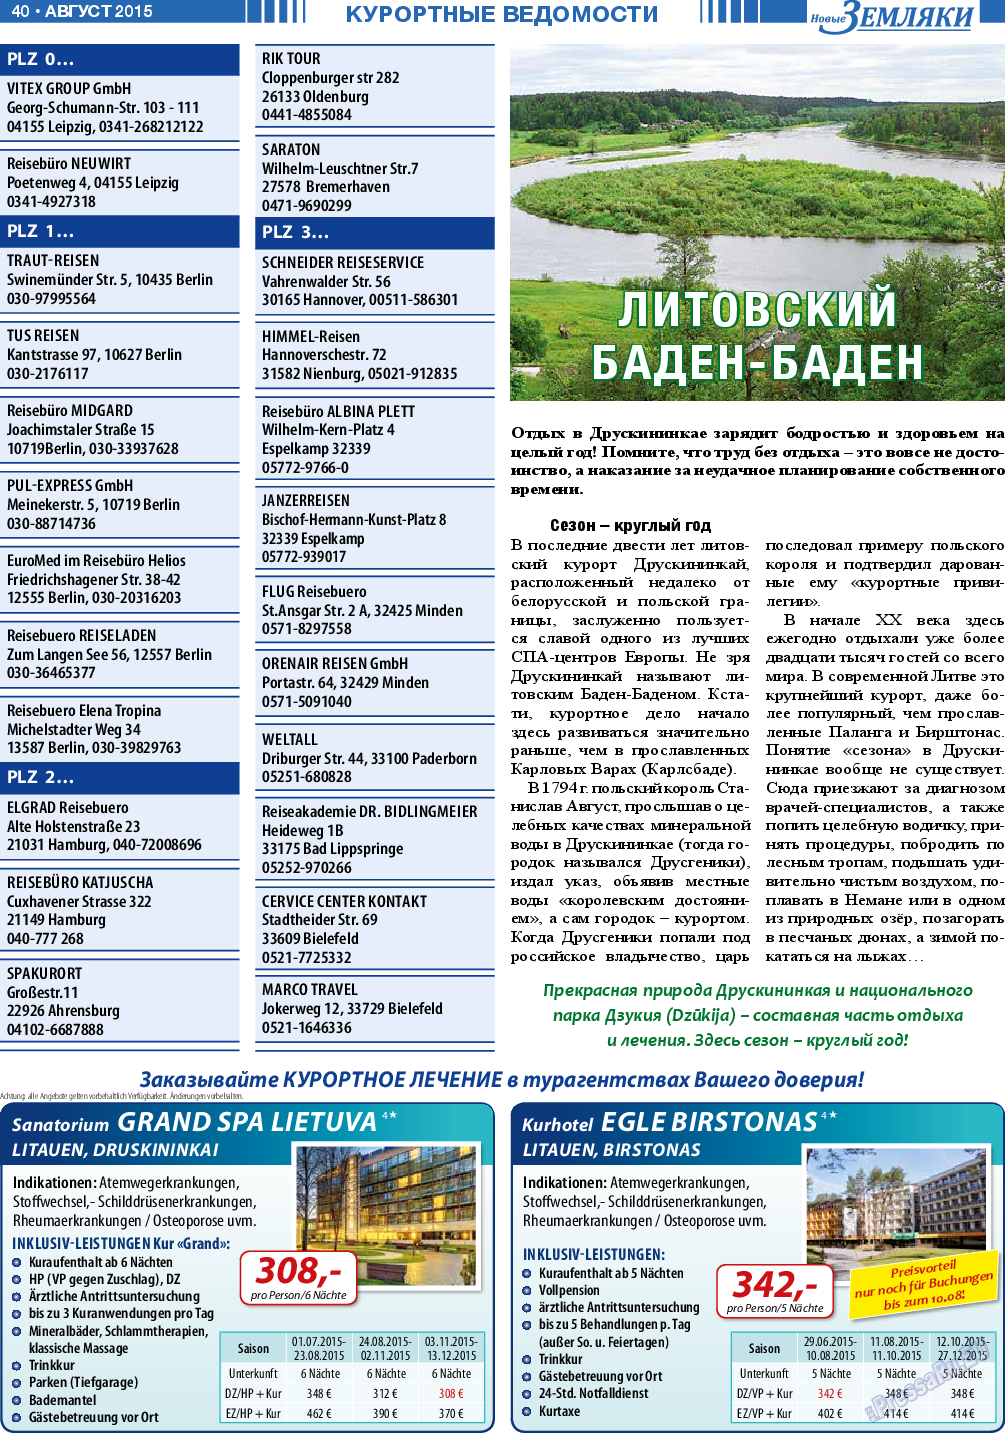 Новые Земляки (газета). 2015 год, номер 8, стр. 40